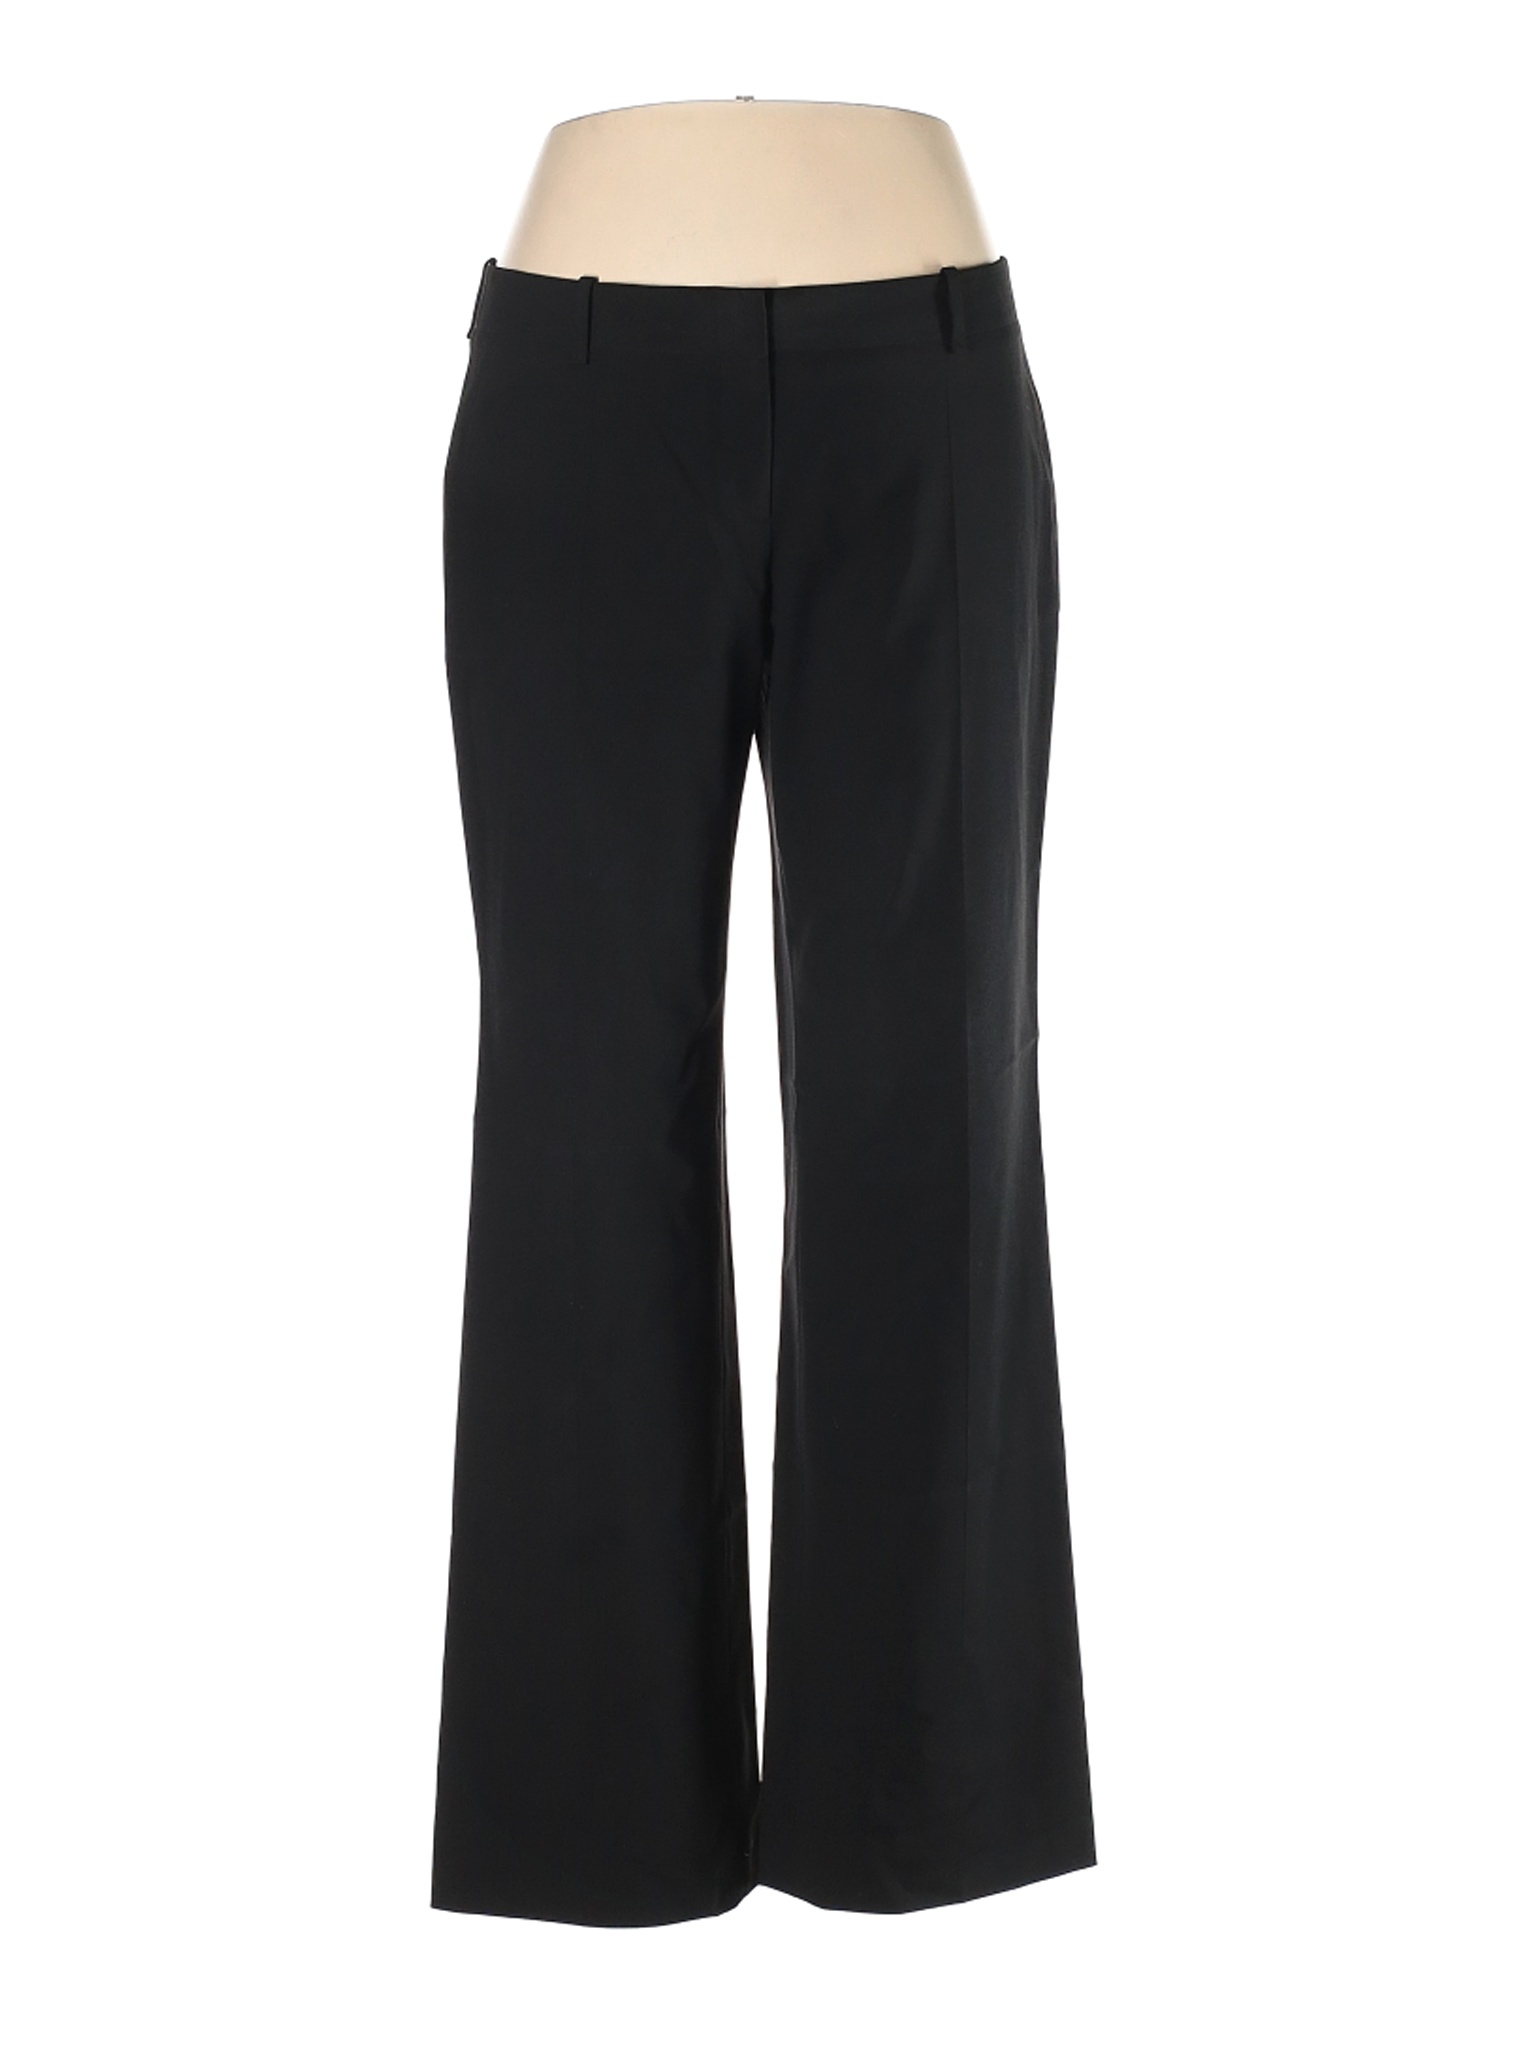 BOSS by HUGO BOSS Women Black Wool Pants 16 uk | eBay